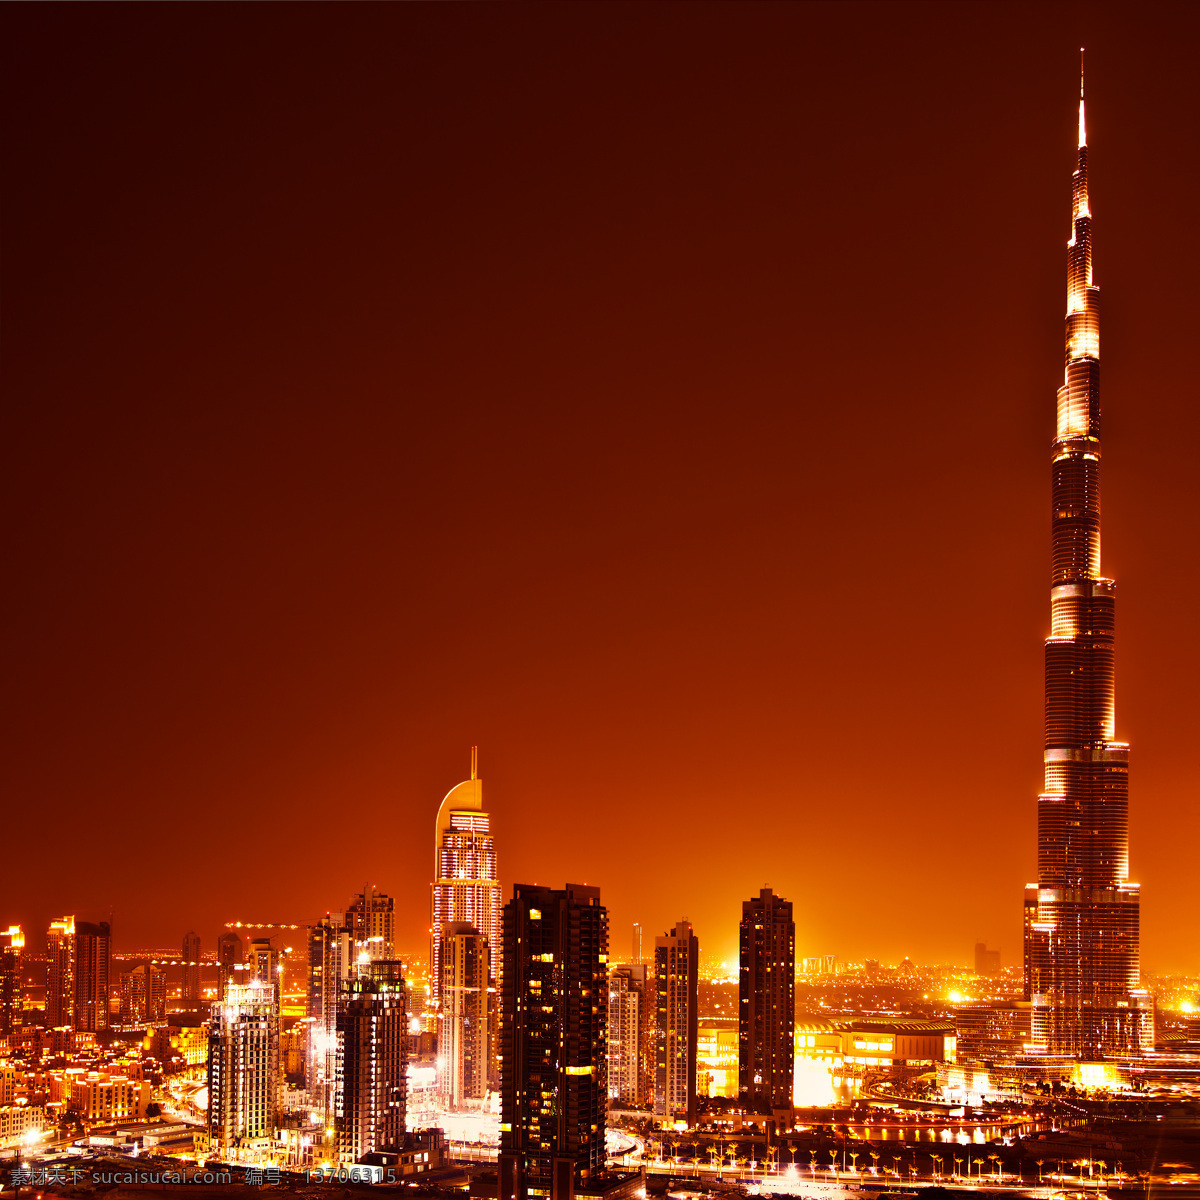 迪拜 阿联酋 摩天大楼 夜景 霓虹灯 繁华都市 高楼大厦 闪烁灯光 都市夜景 城市夜景 旅游景区 城市建筑 城市风光 环境家居